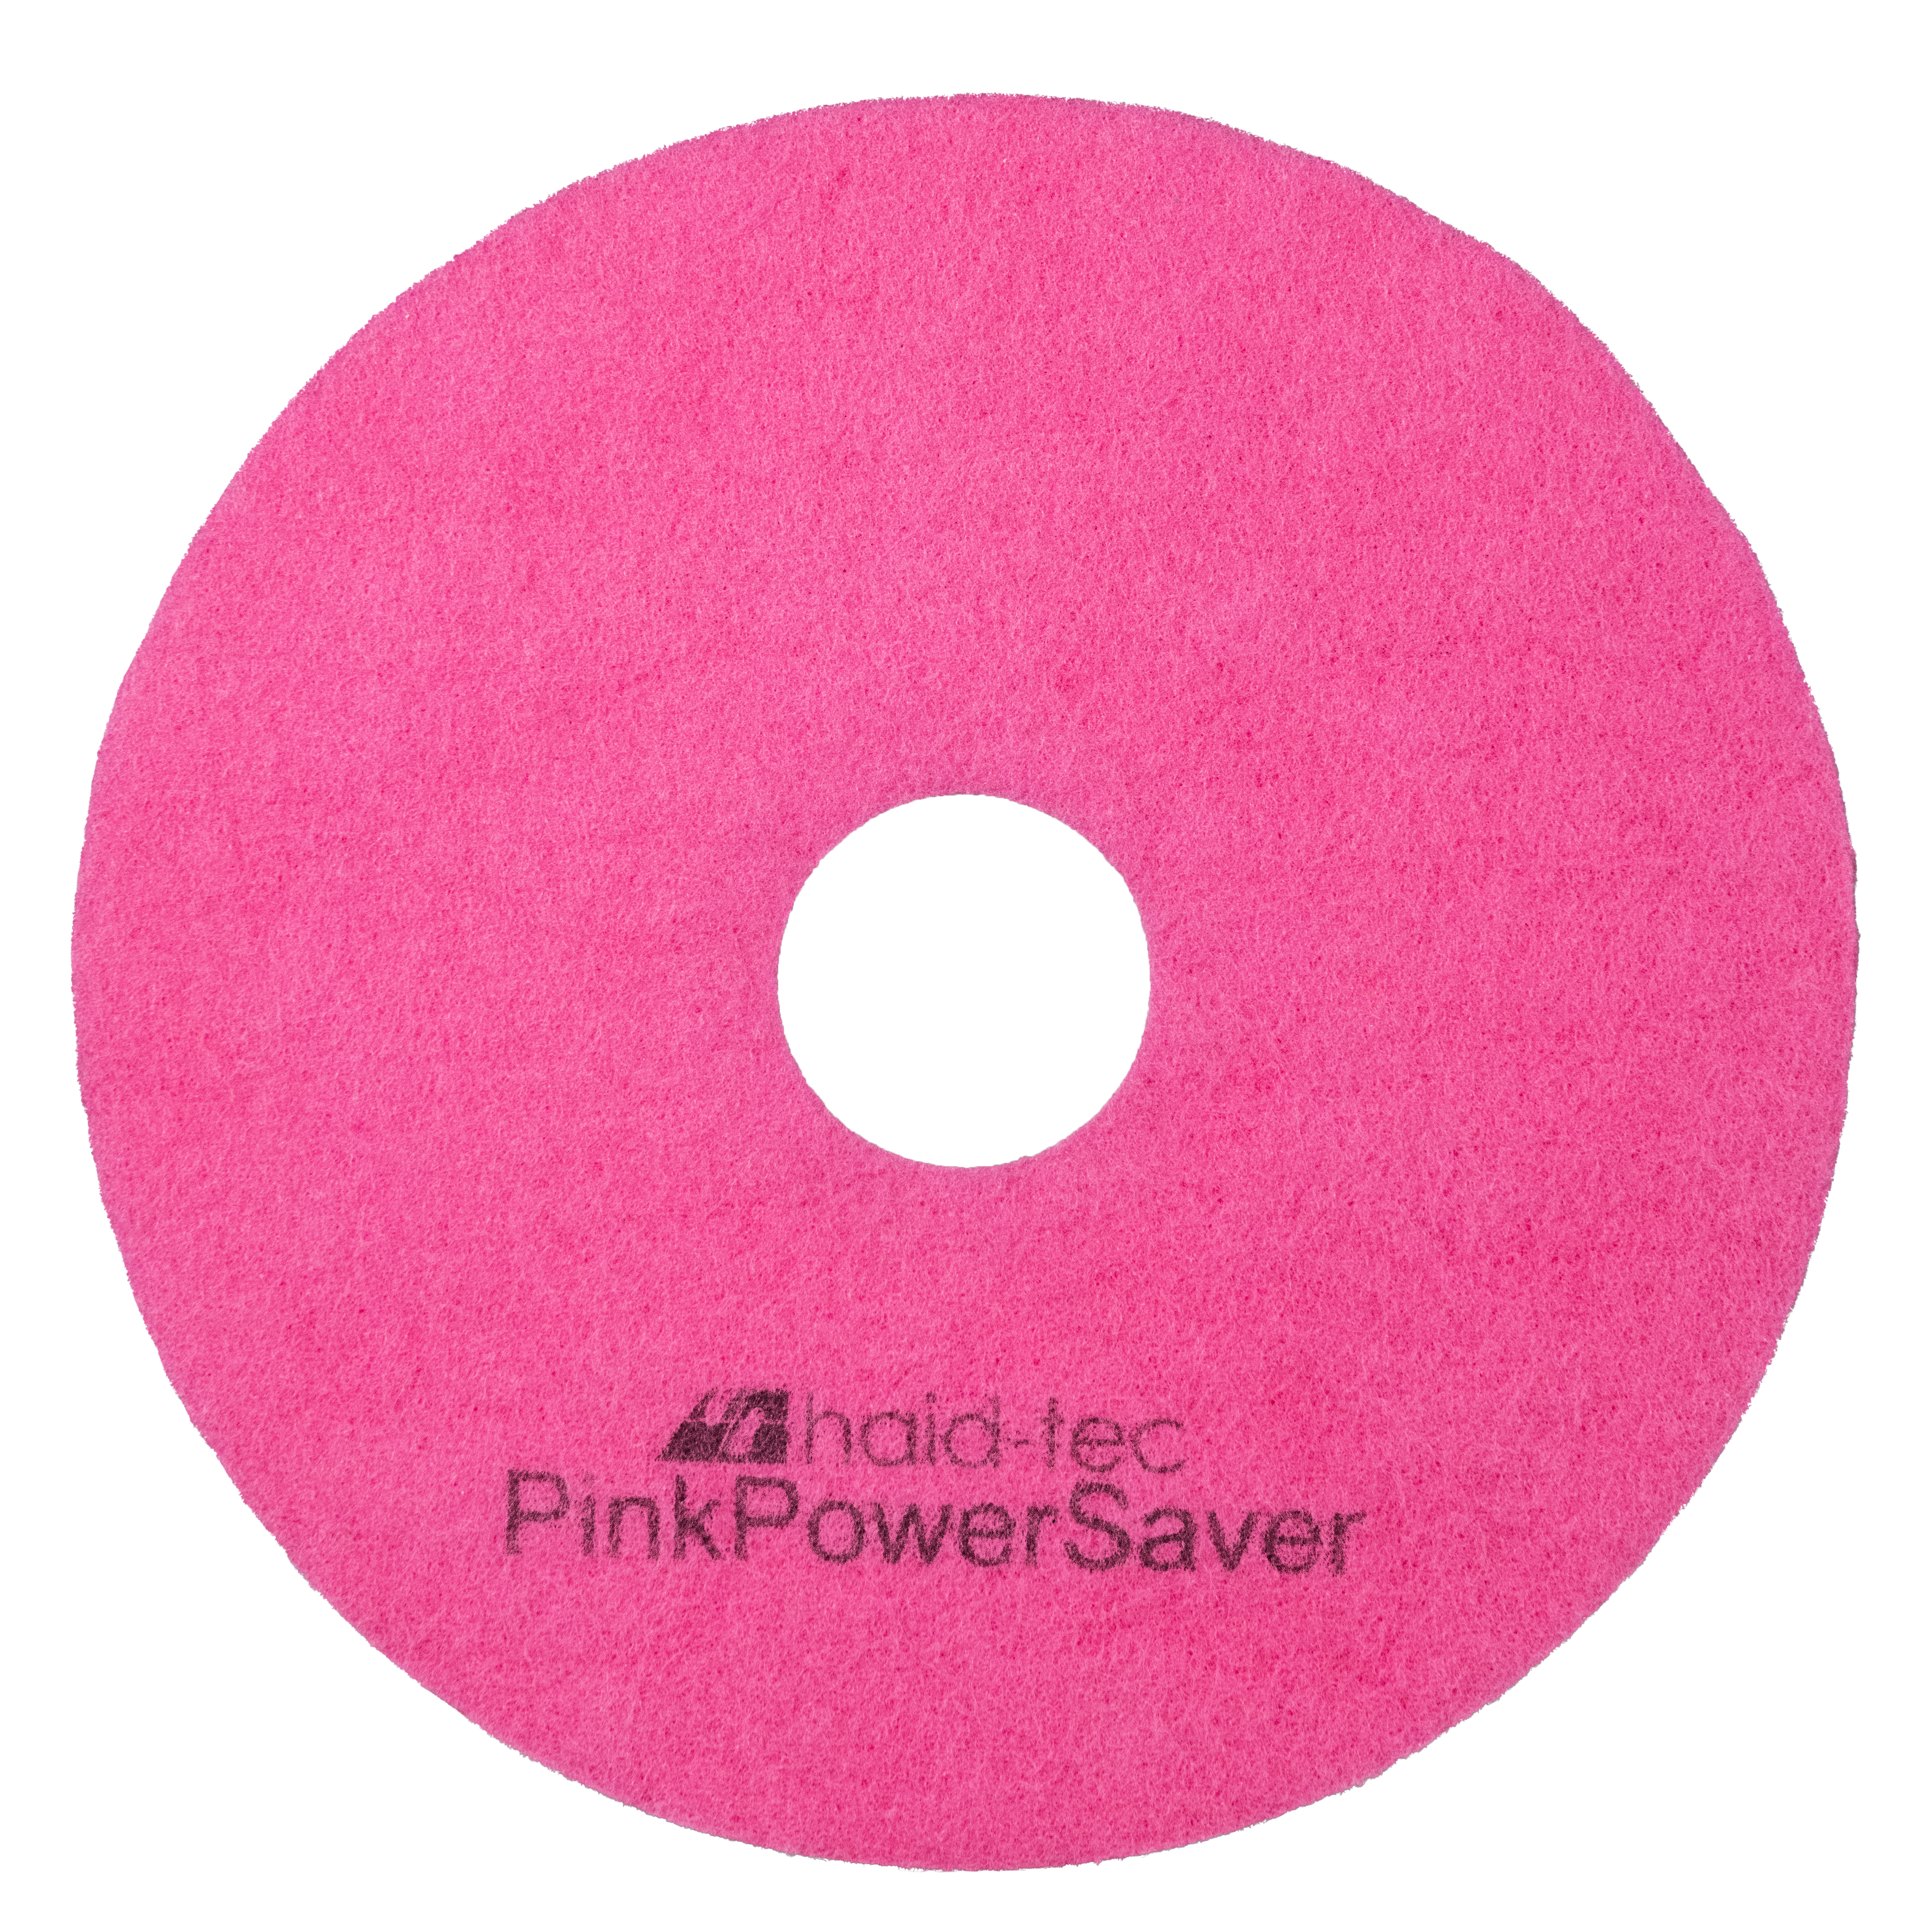 PinkPowerSaver Pad 8.6Zoll/218mm für NUC244NX, Pad für Kompakt-Scheuersaugmaschine - Melaminpad für die Intensiv- und Unterhaltsreinigung